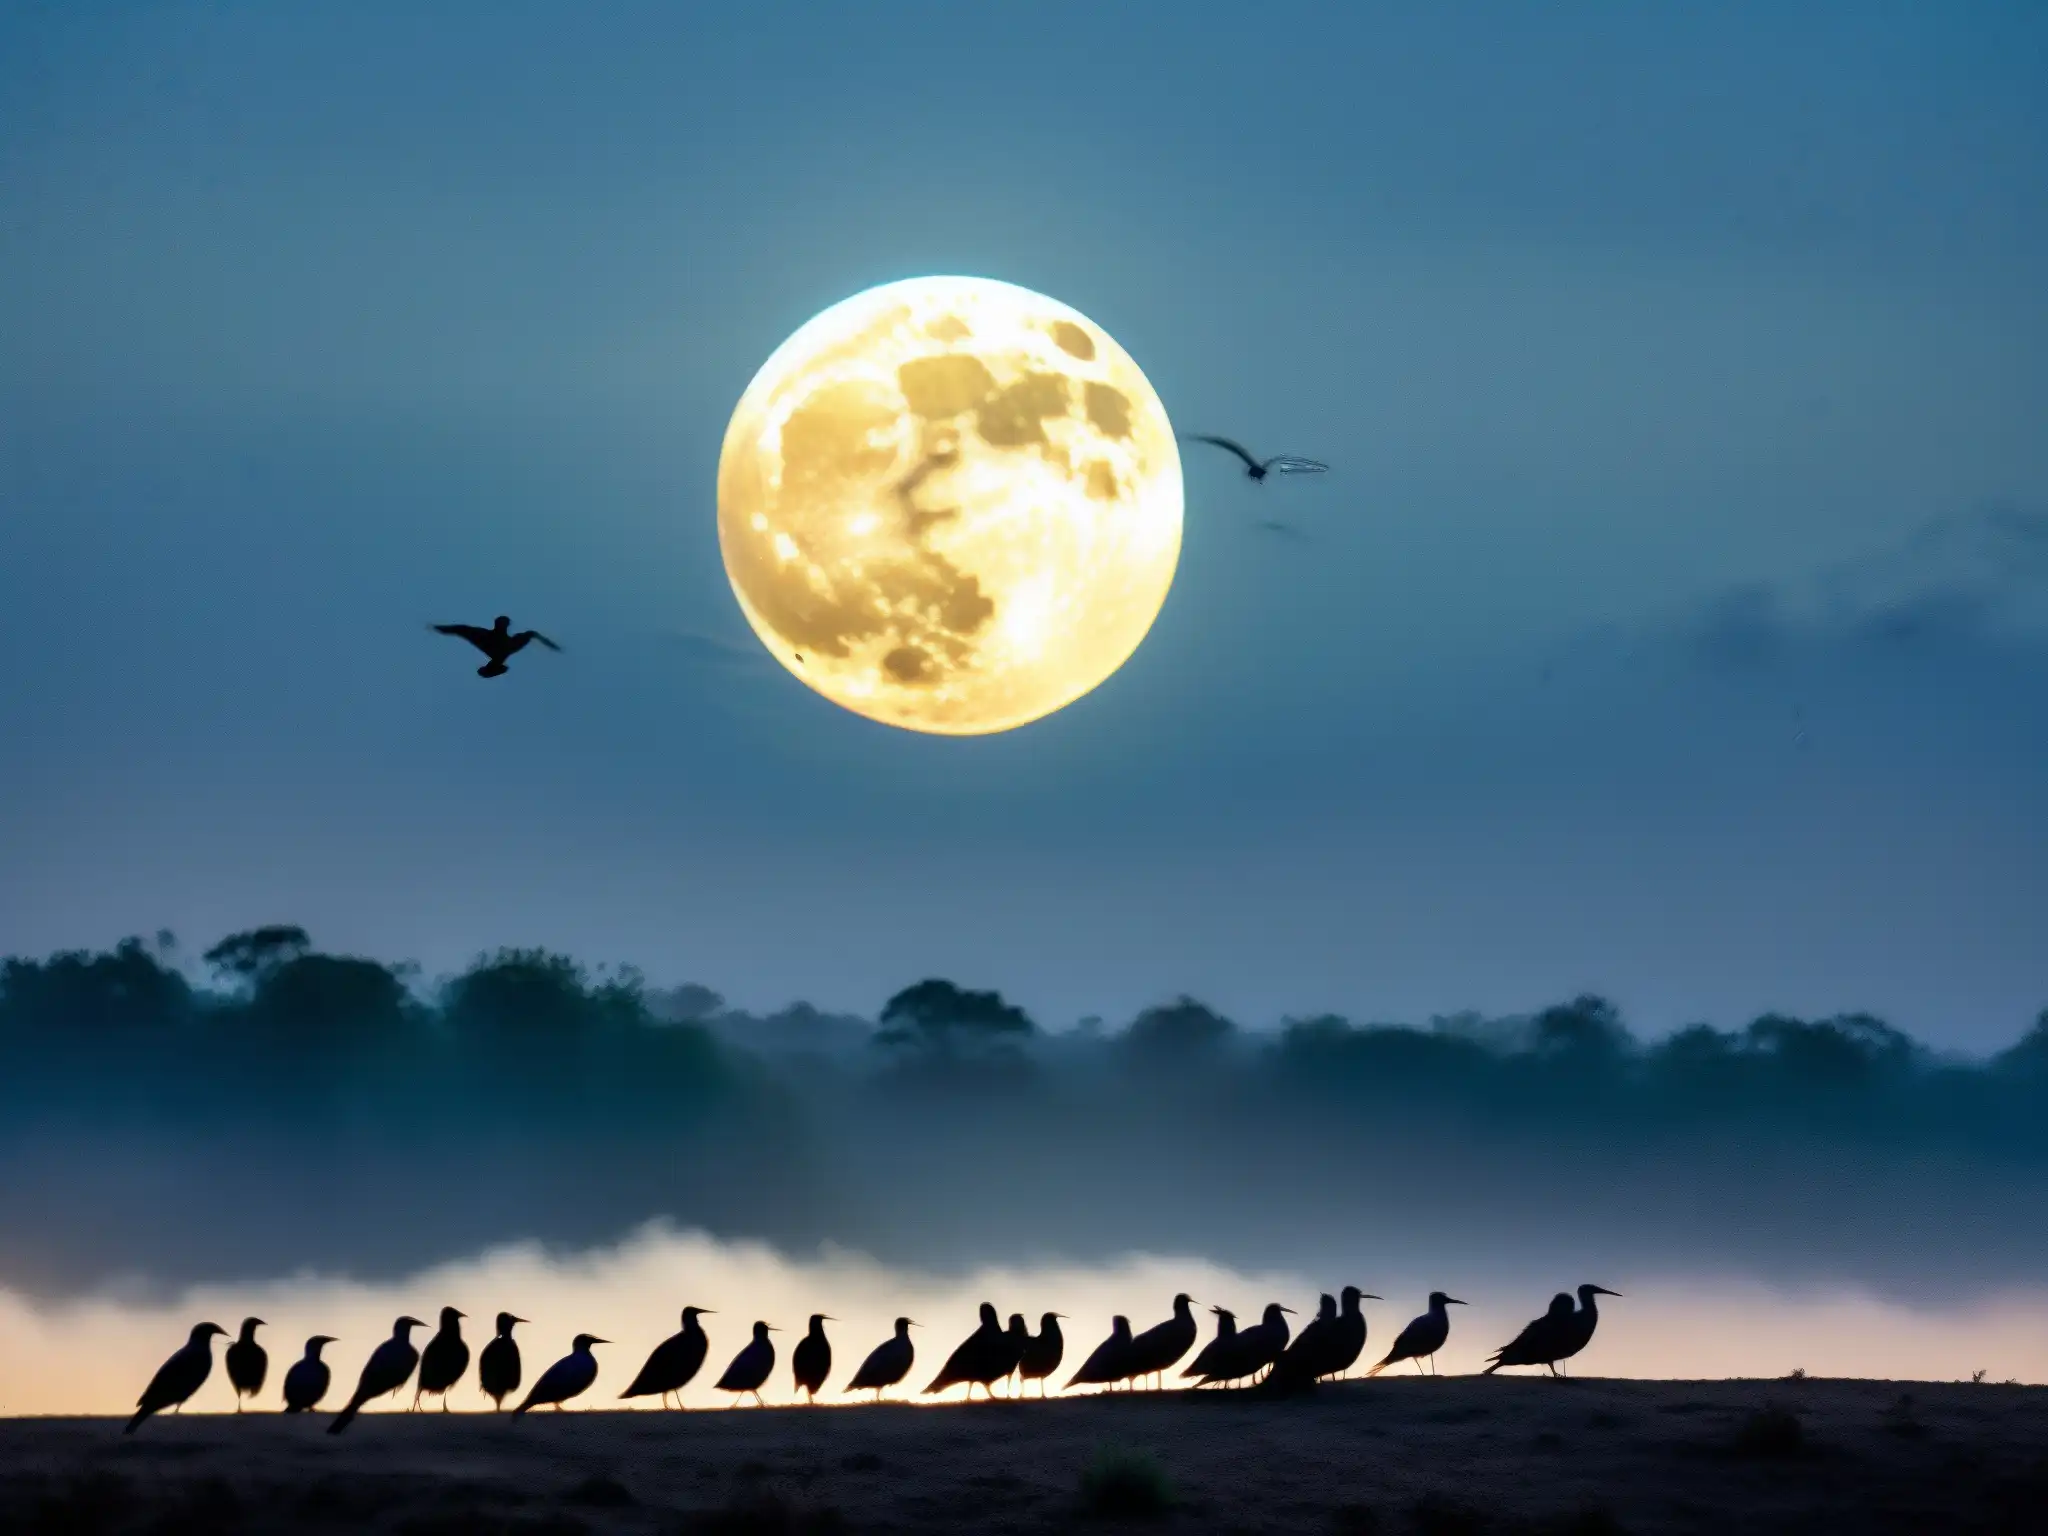 Misteriosa imagen de aves cayendo del cielo en la noche de Jatinga, evocando el misterio del fenómeno aviar